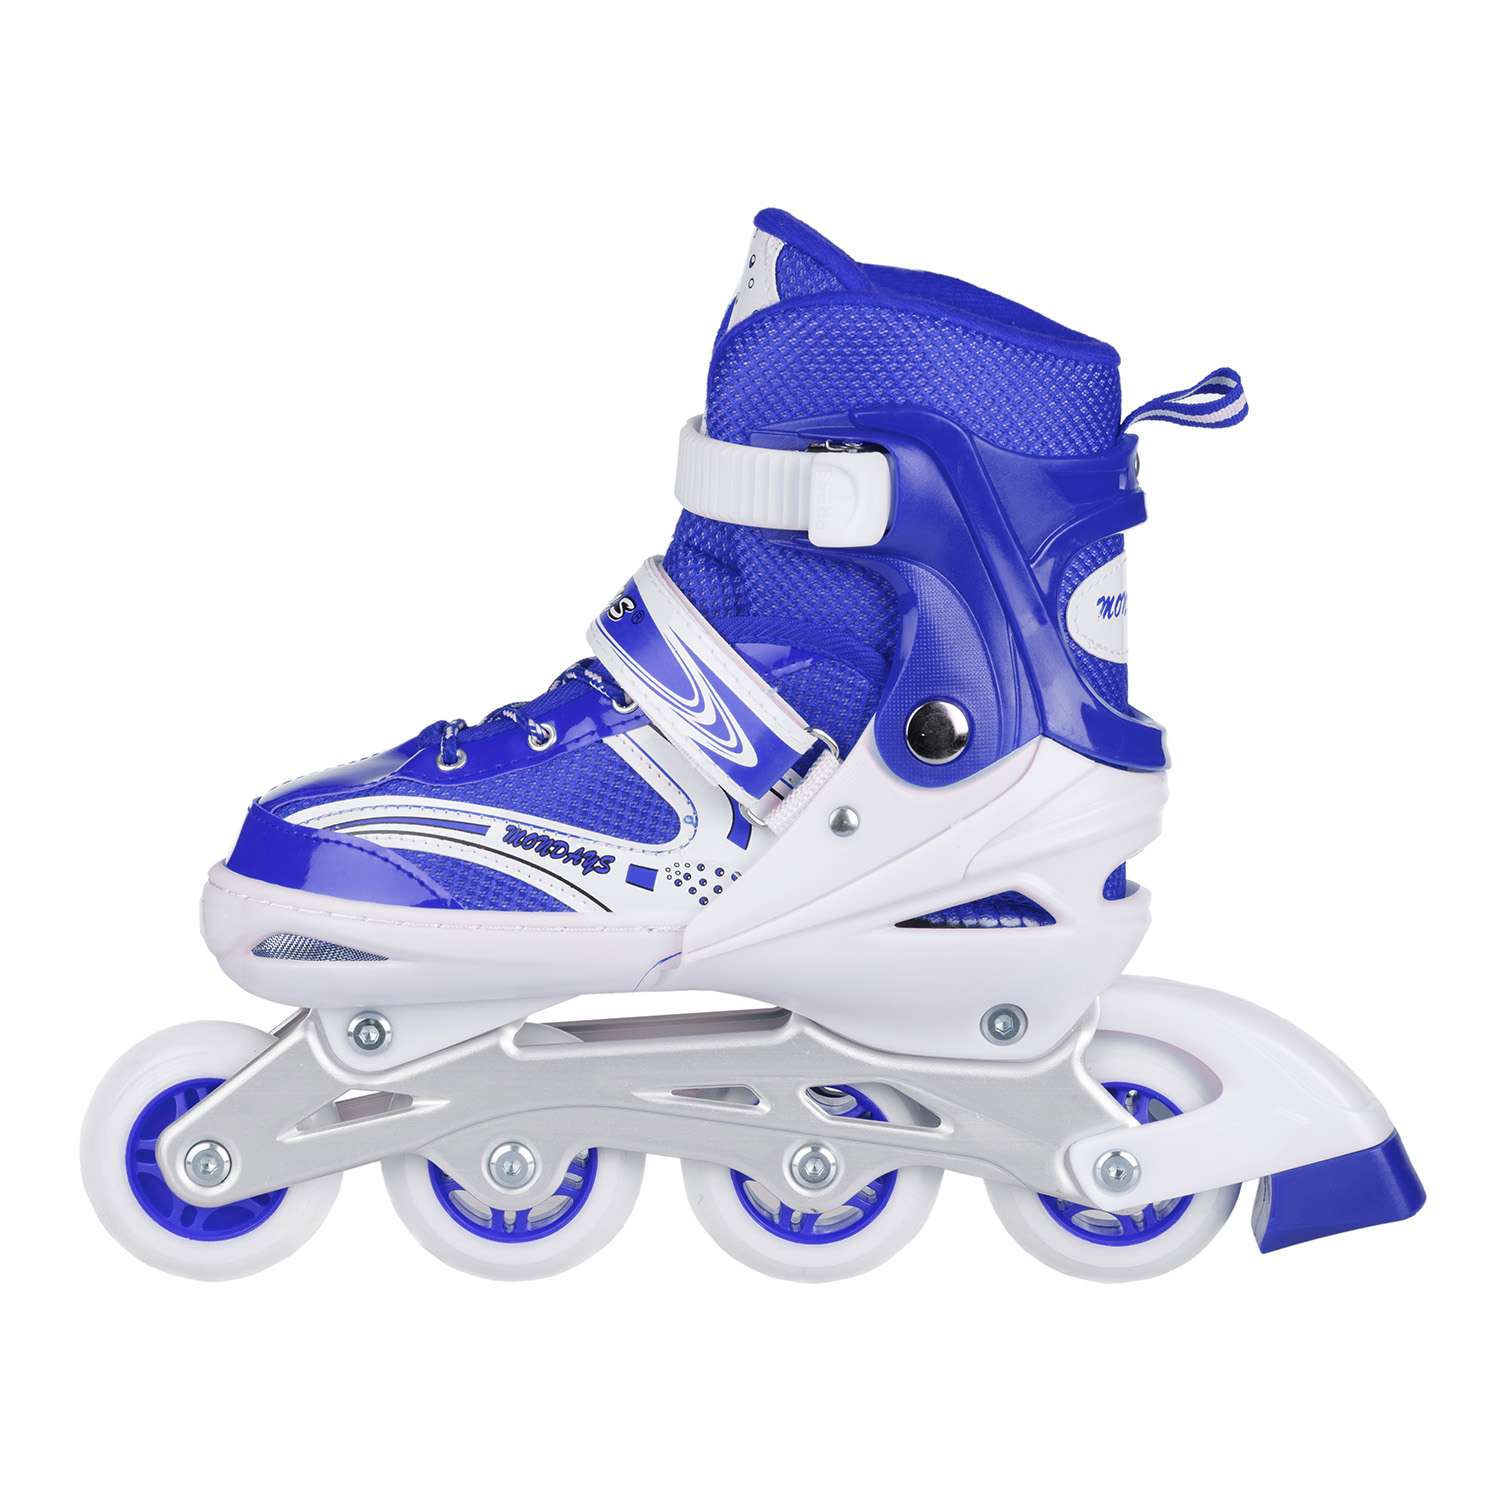 Роликовые коньки BABY STYLE синие раздвижные размер с 28 по 31S светящиеся колеса - фото 7